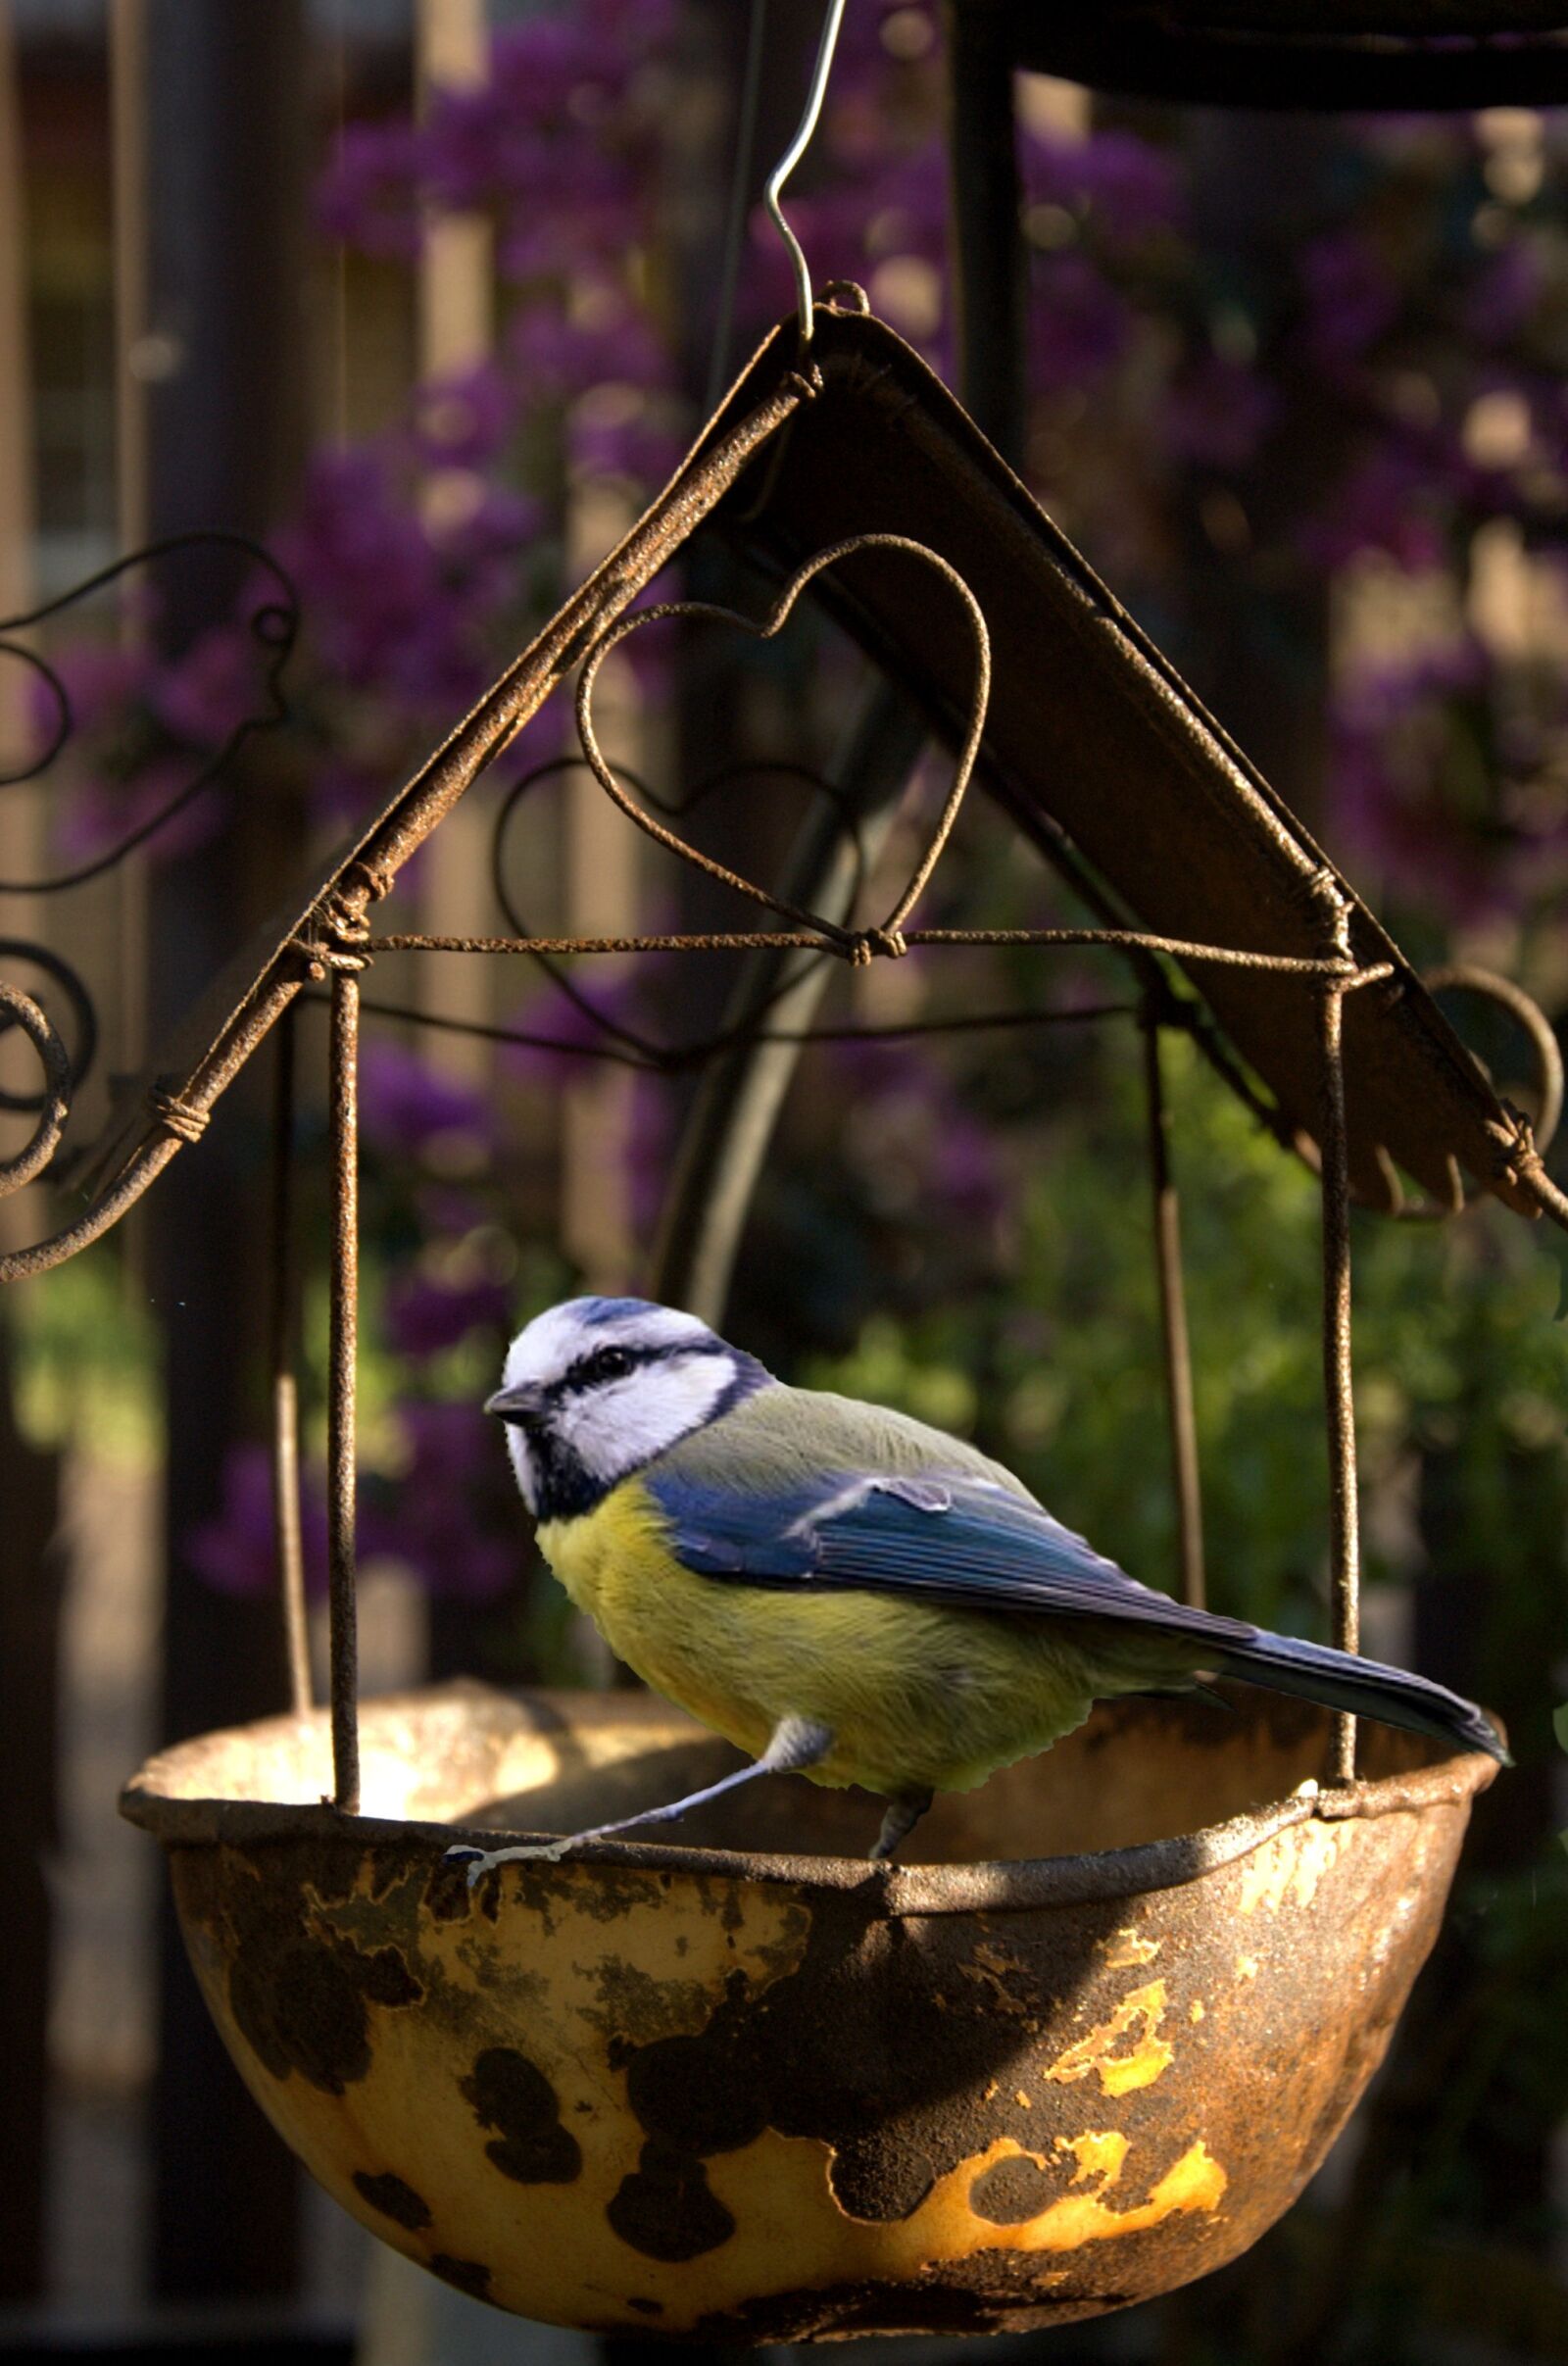 Nikon D70s sample photo. Bird, feeding, garden photography